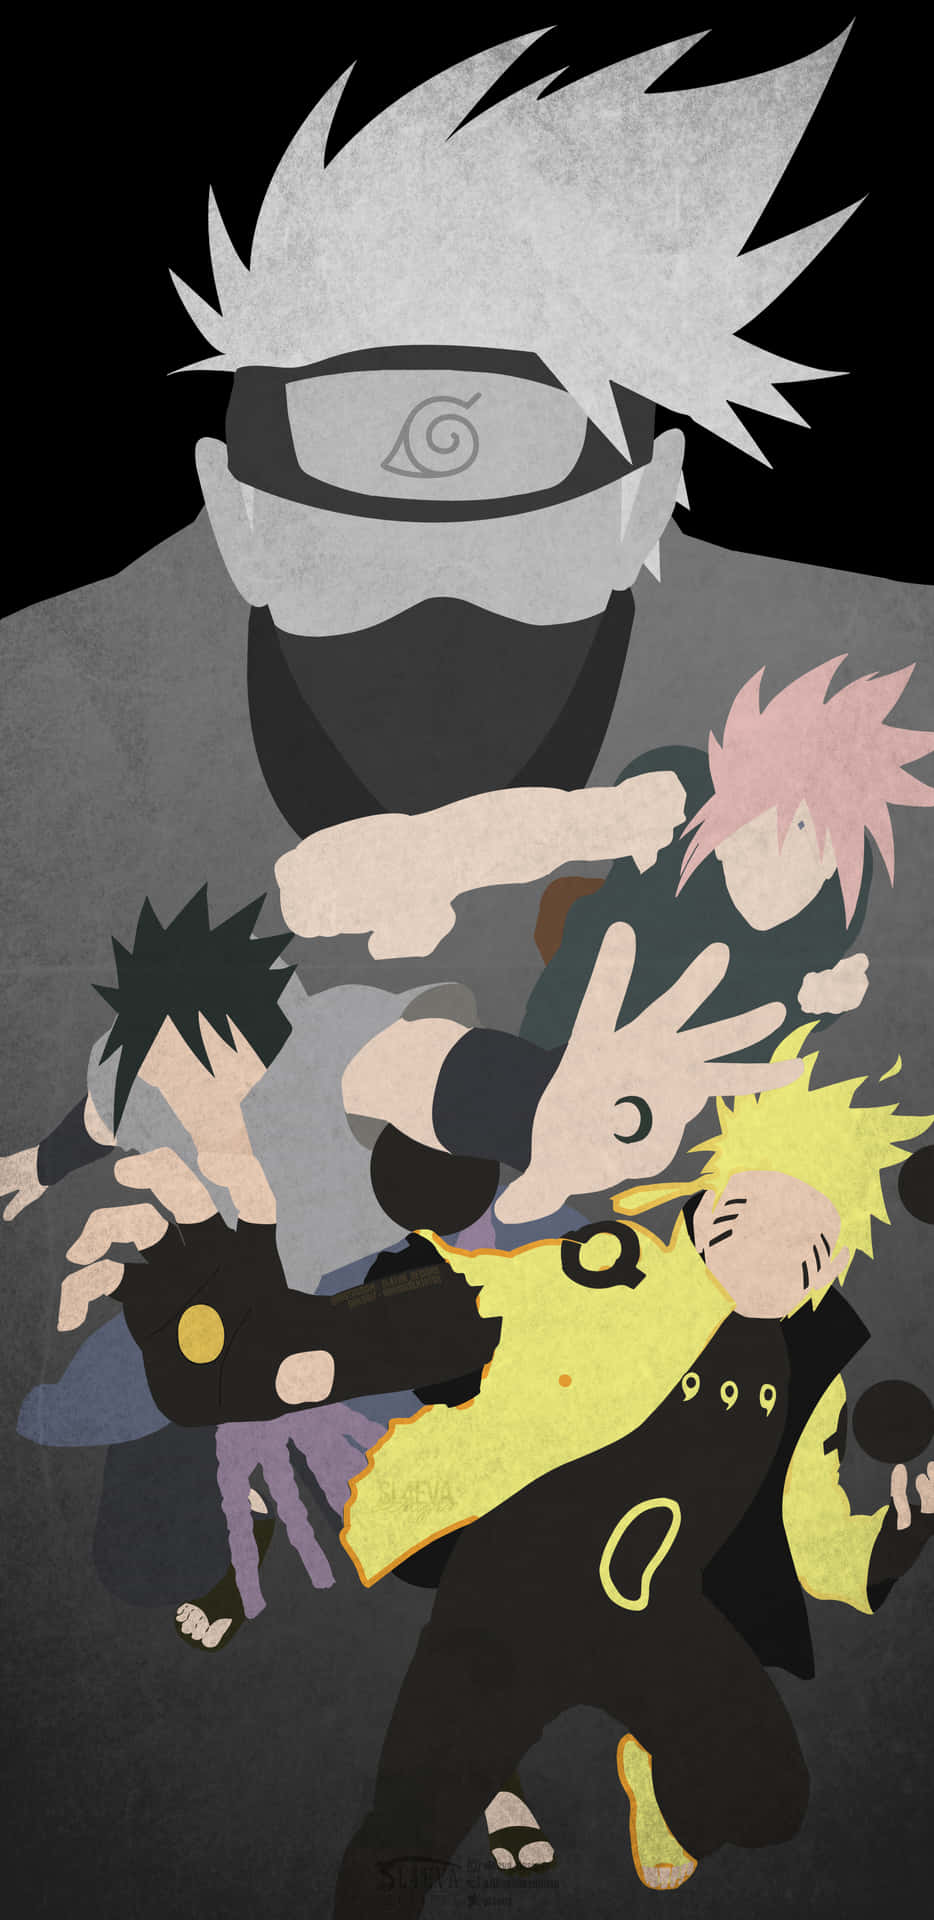 Narutoteam 7 - Unga Geniner Erövrar Världen. Wallpaper